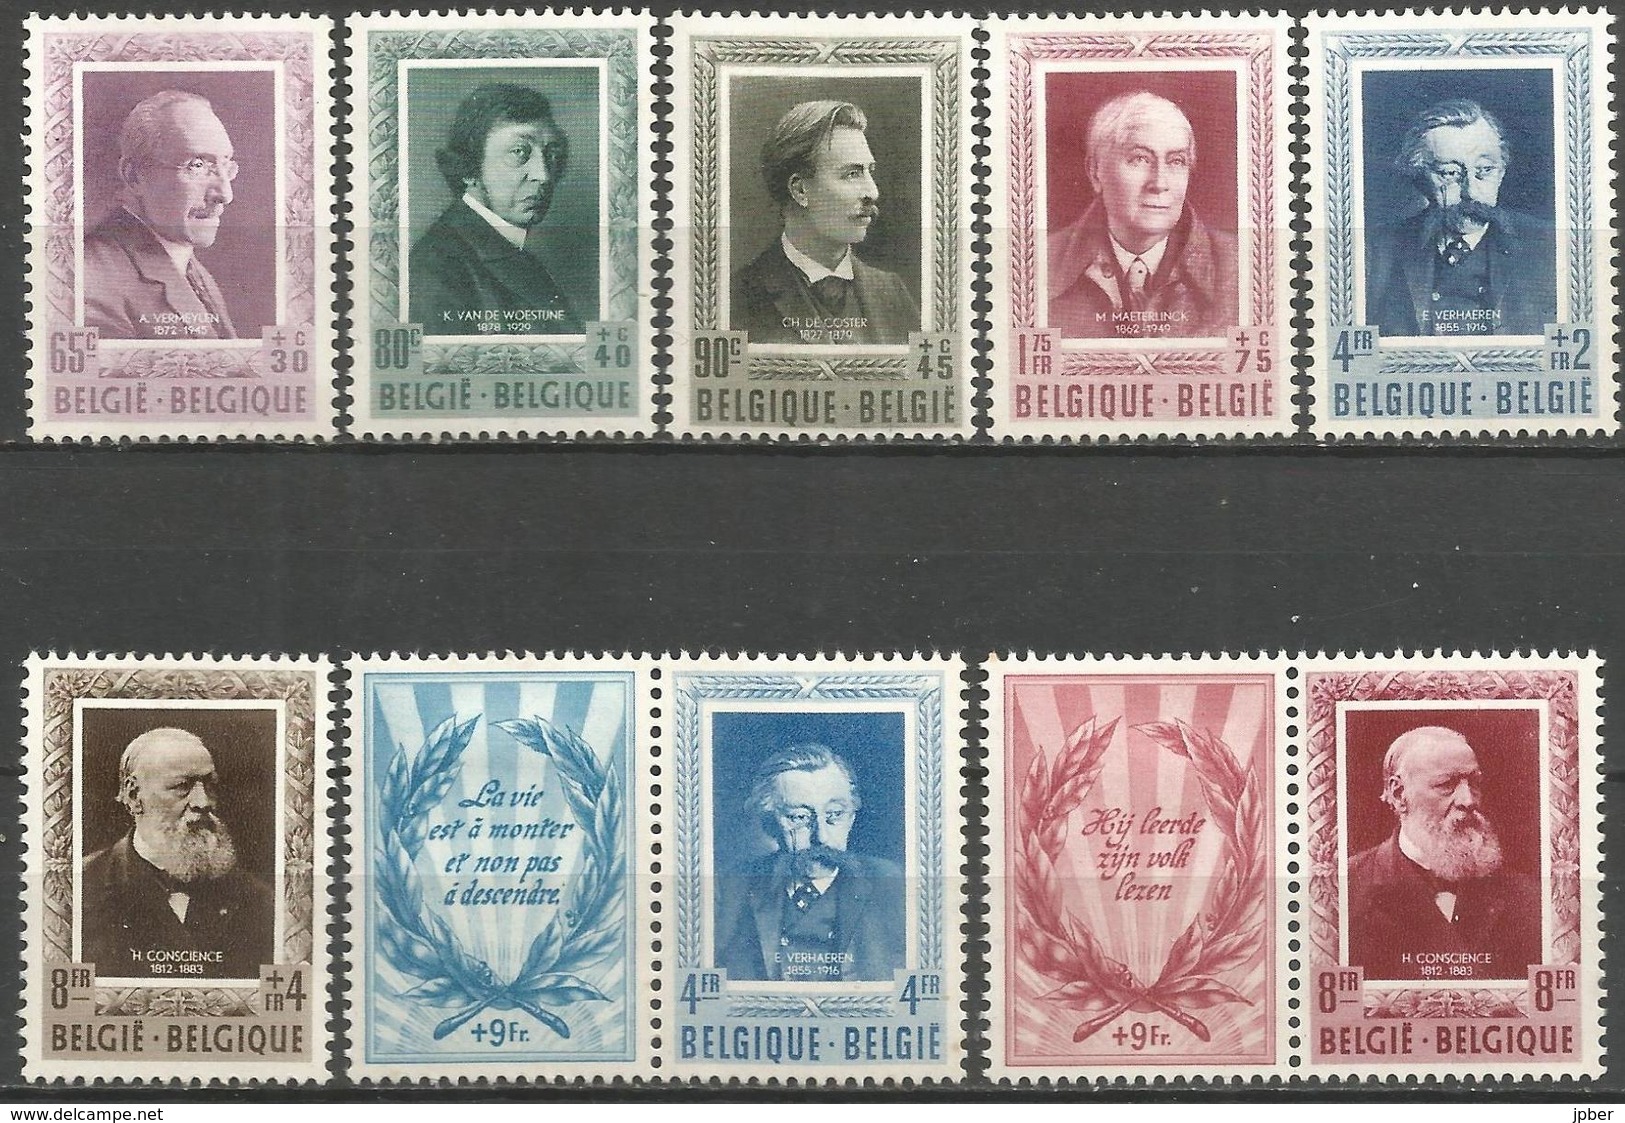 (E052) BELGIQUE - N°892à899* - Littérateurs - Vermeylen, Van De Woestijne, De Coster, Maeterlinck, Verhaeren, Conscience - Unused Stamps